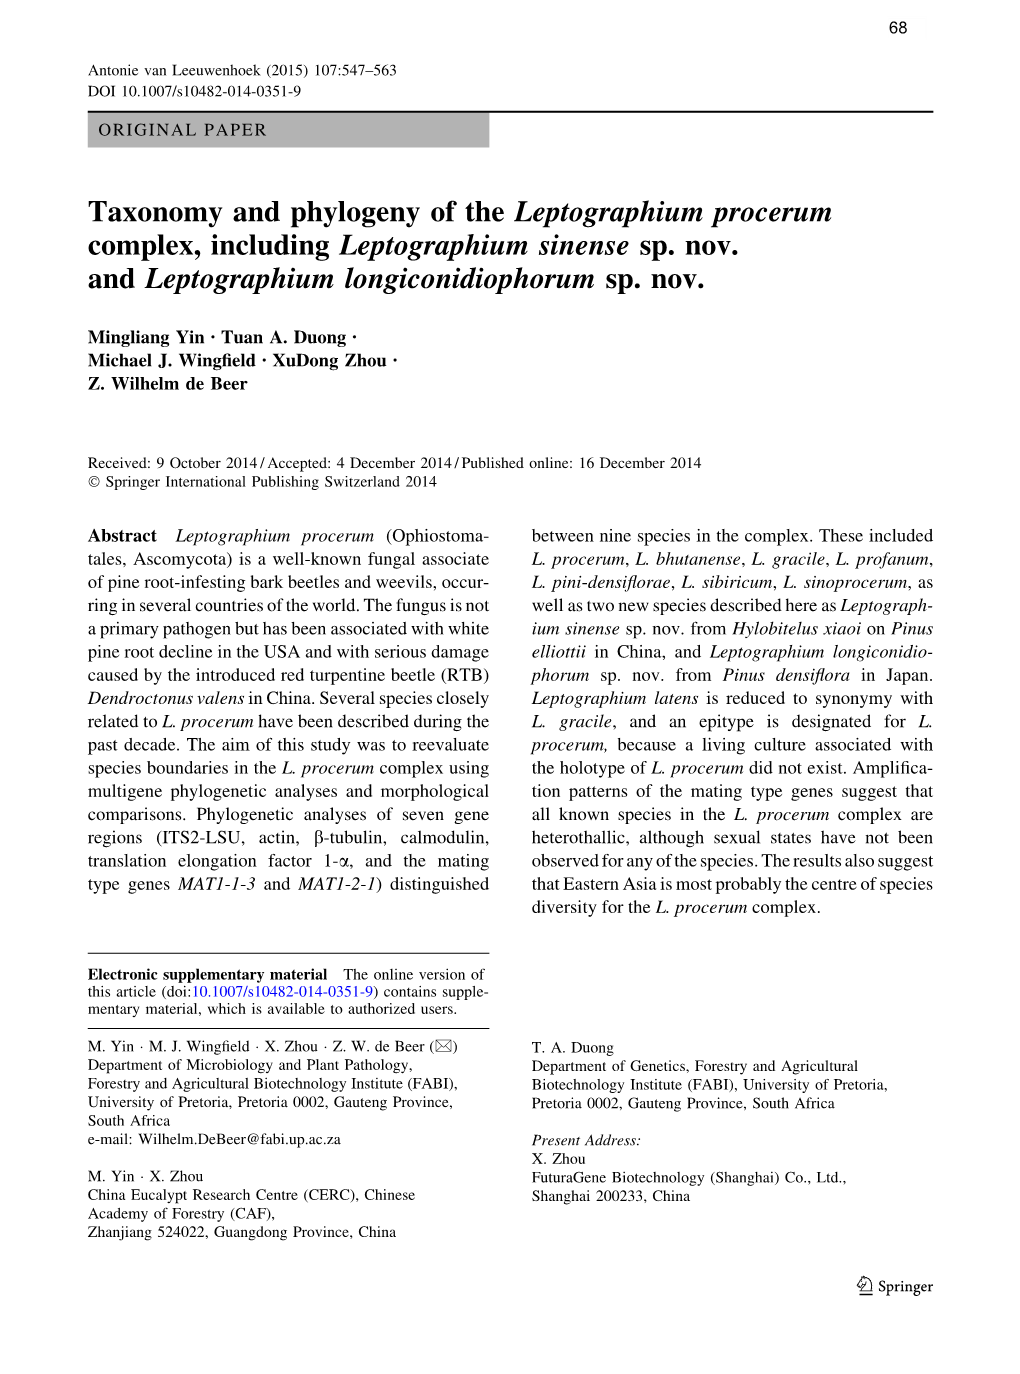 Leptographium Sensu Lato